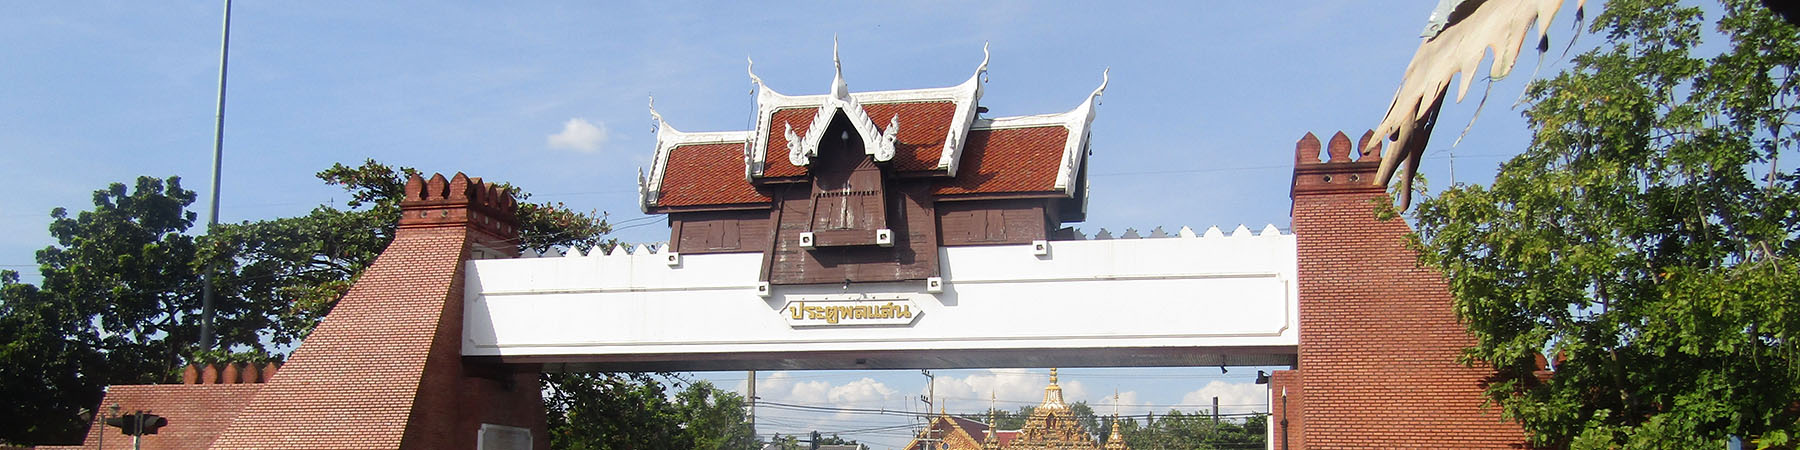 Phon Lan Gate, Nakhon Ratchasema